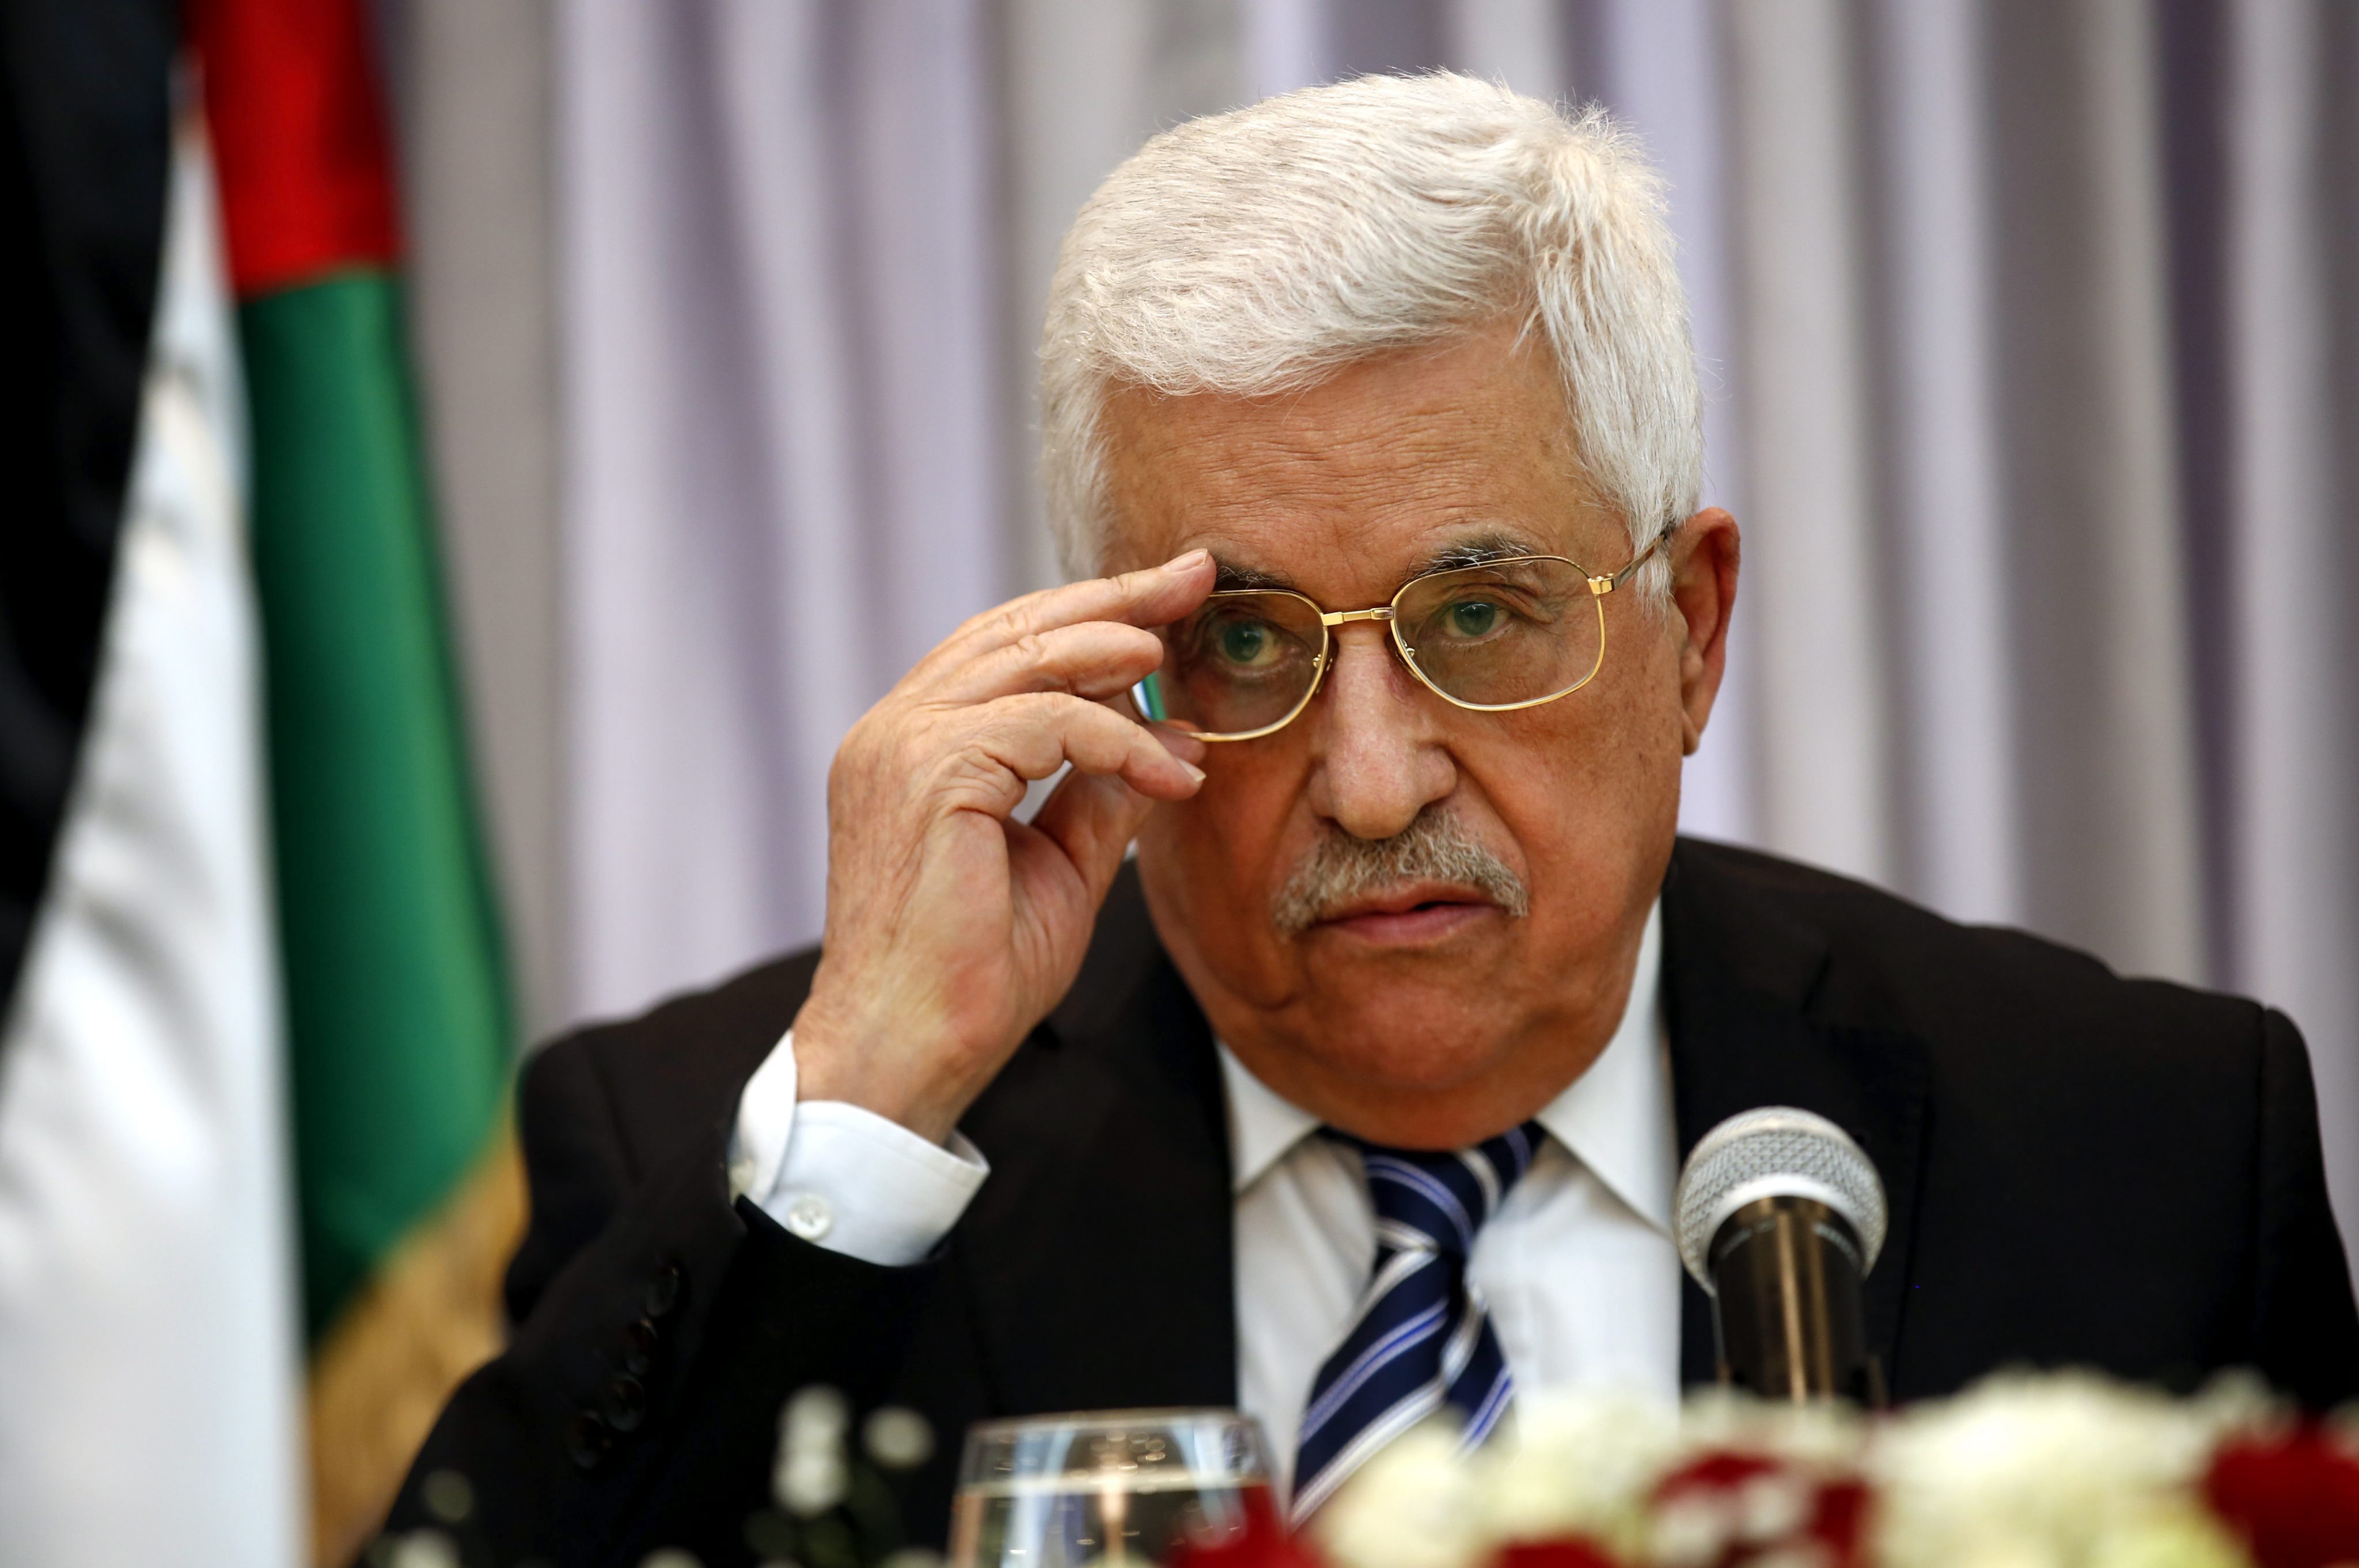 El líder palestino está convencido de alcanzar 